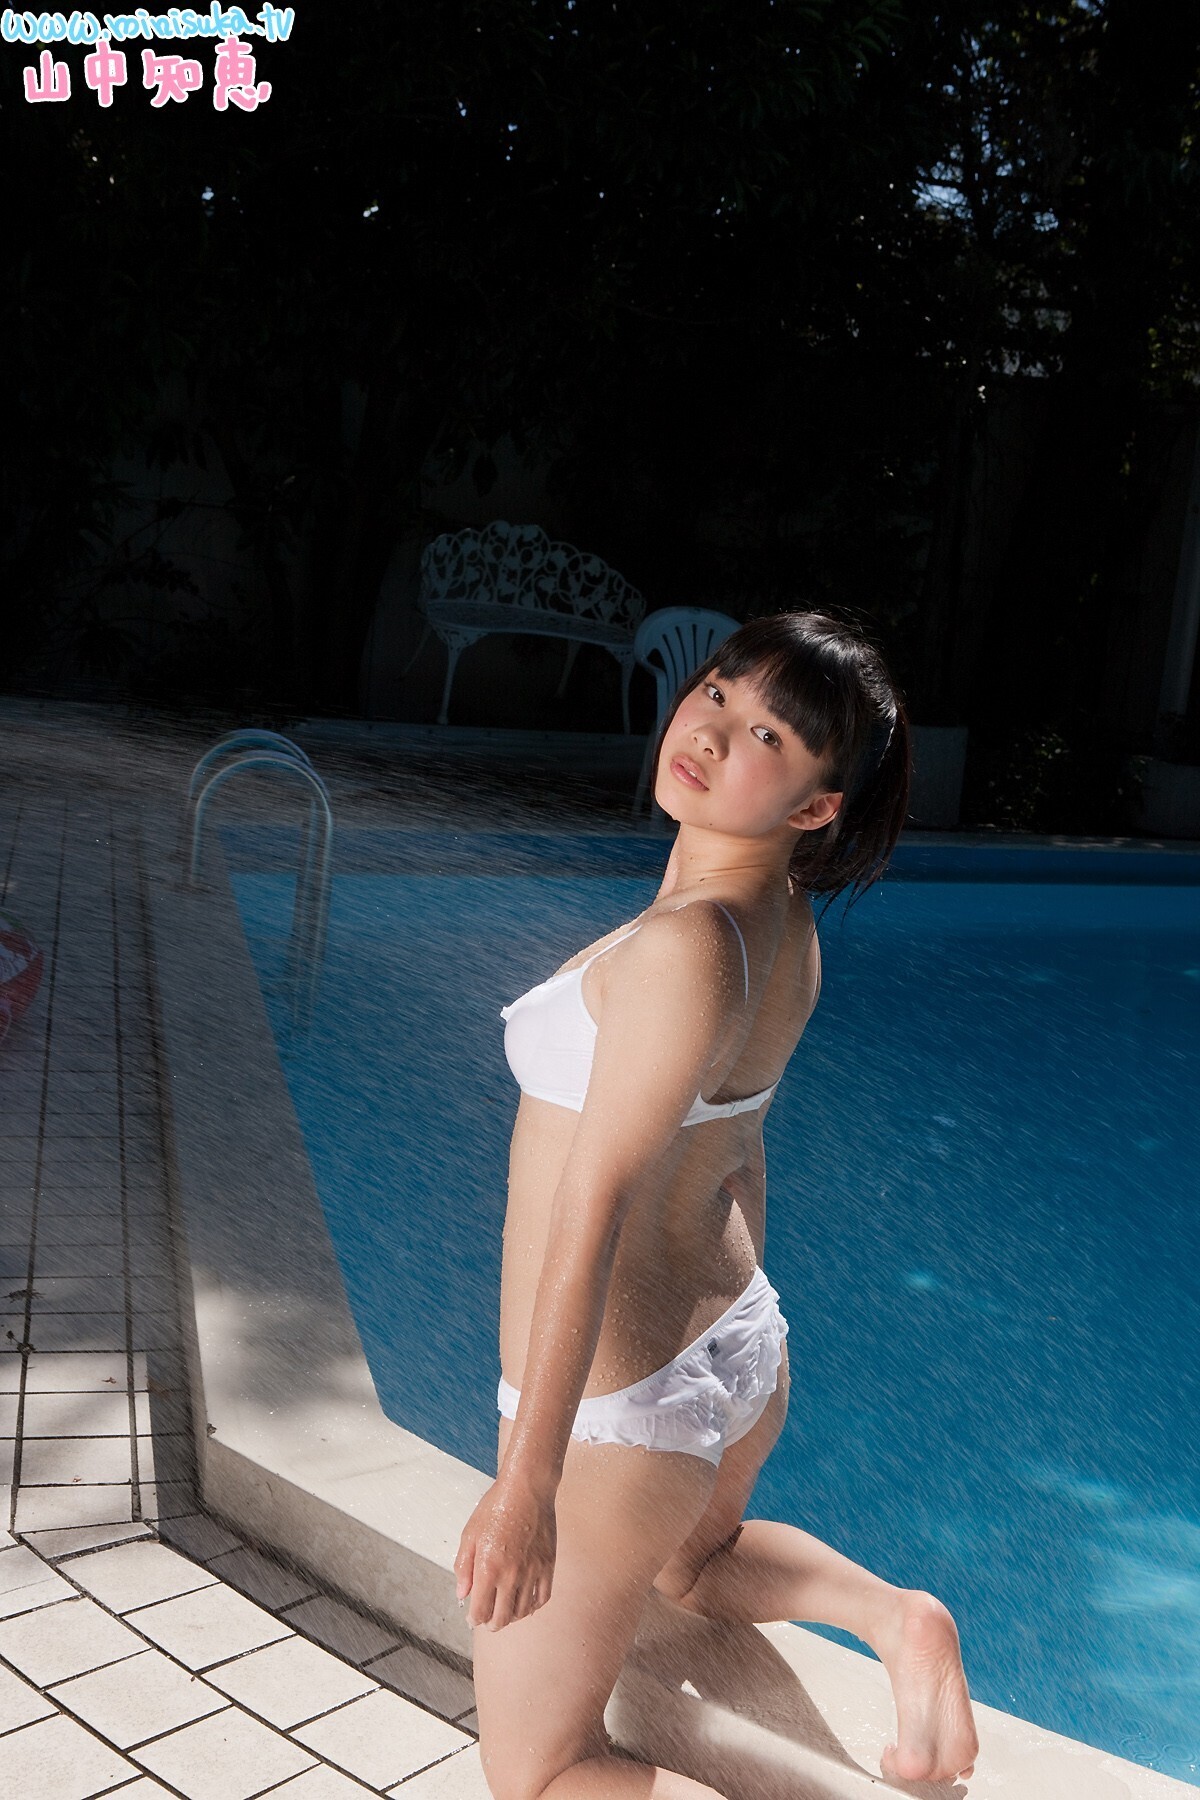 [ Minisuka.tv ]20121119 Tomoe Yamanaka Japanese actress photo